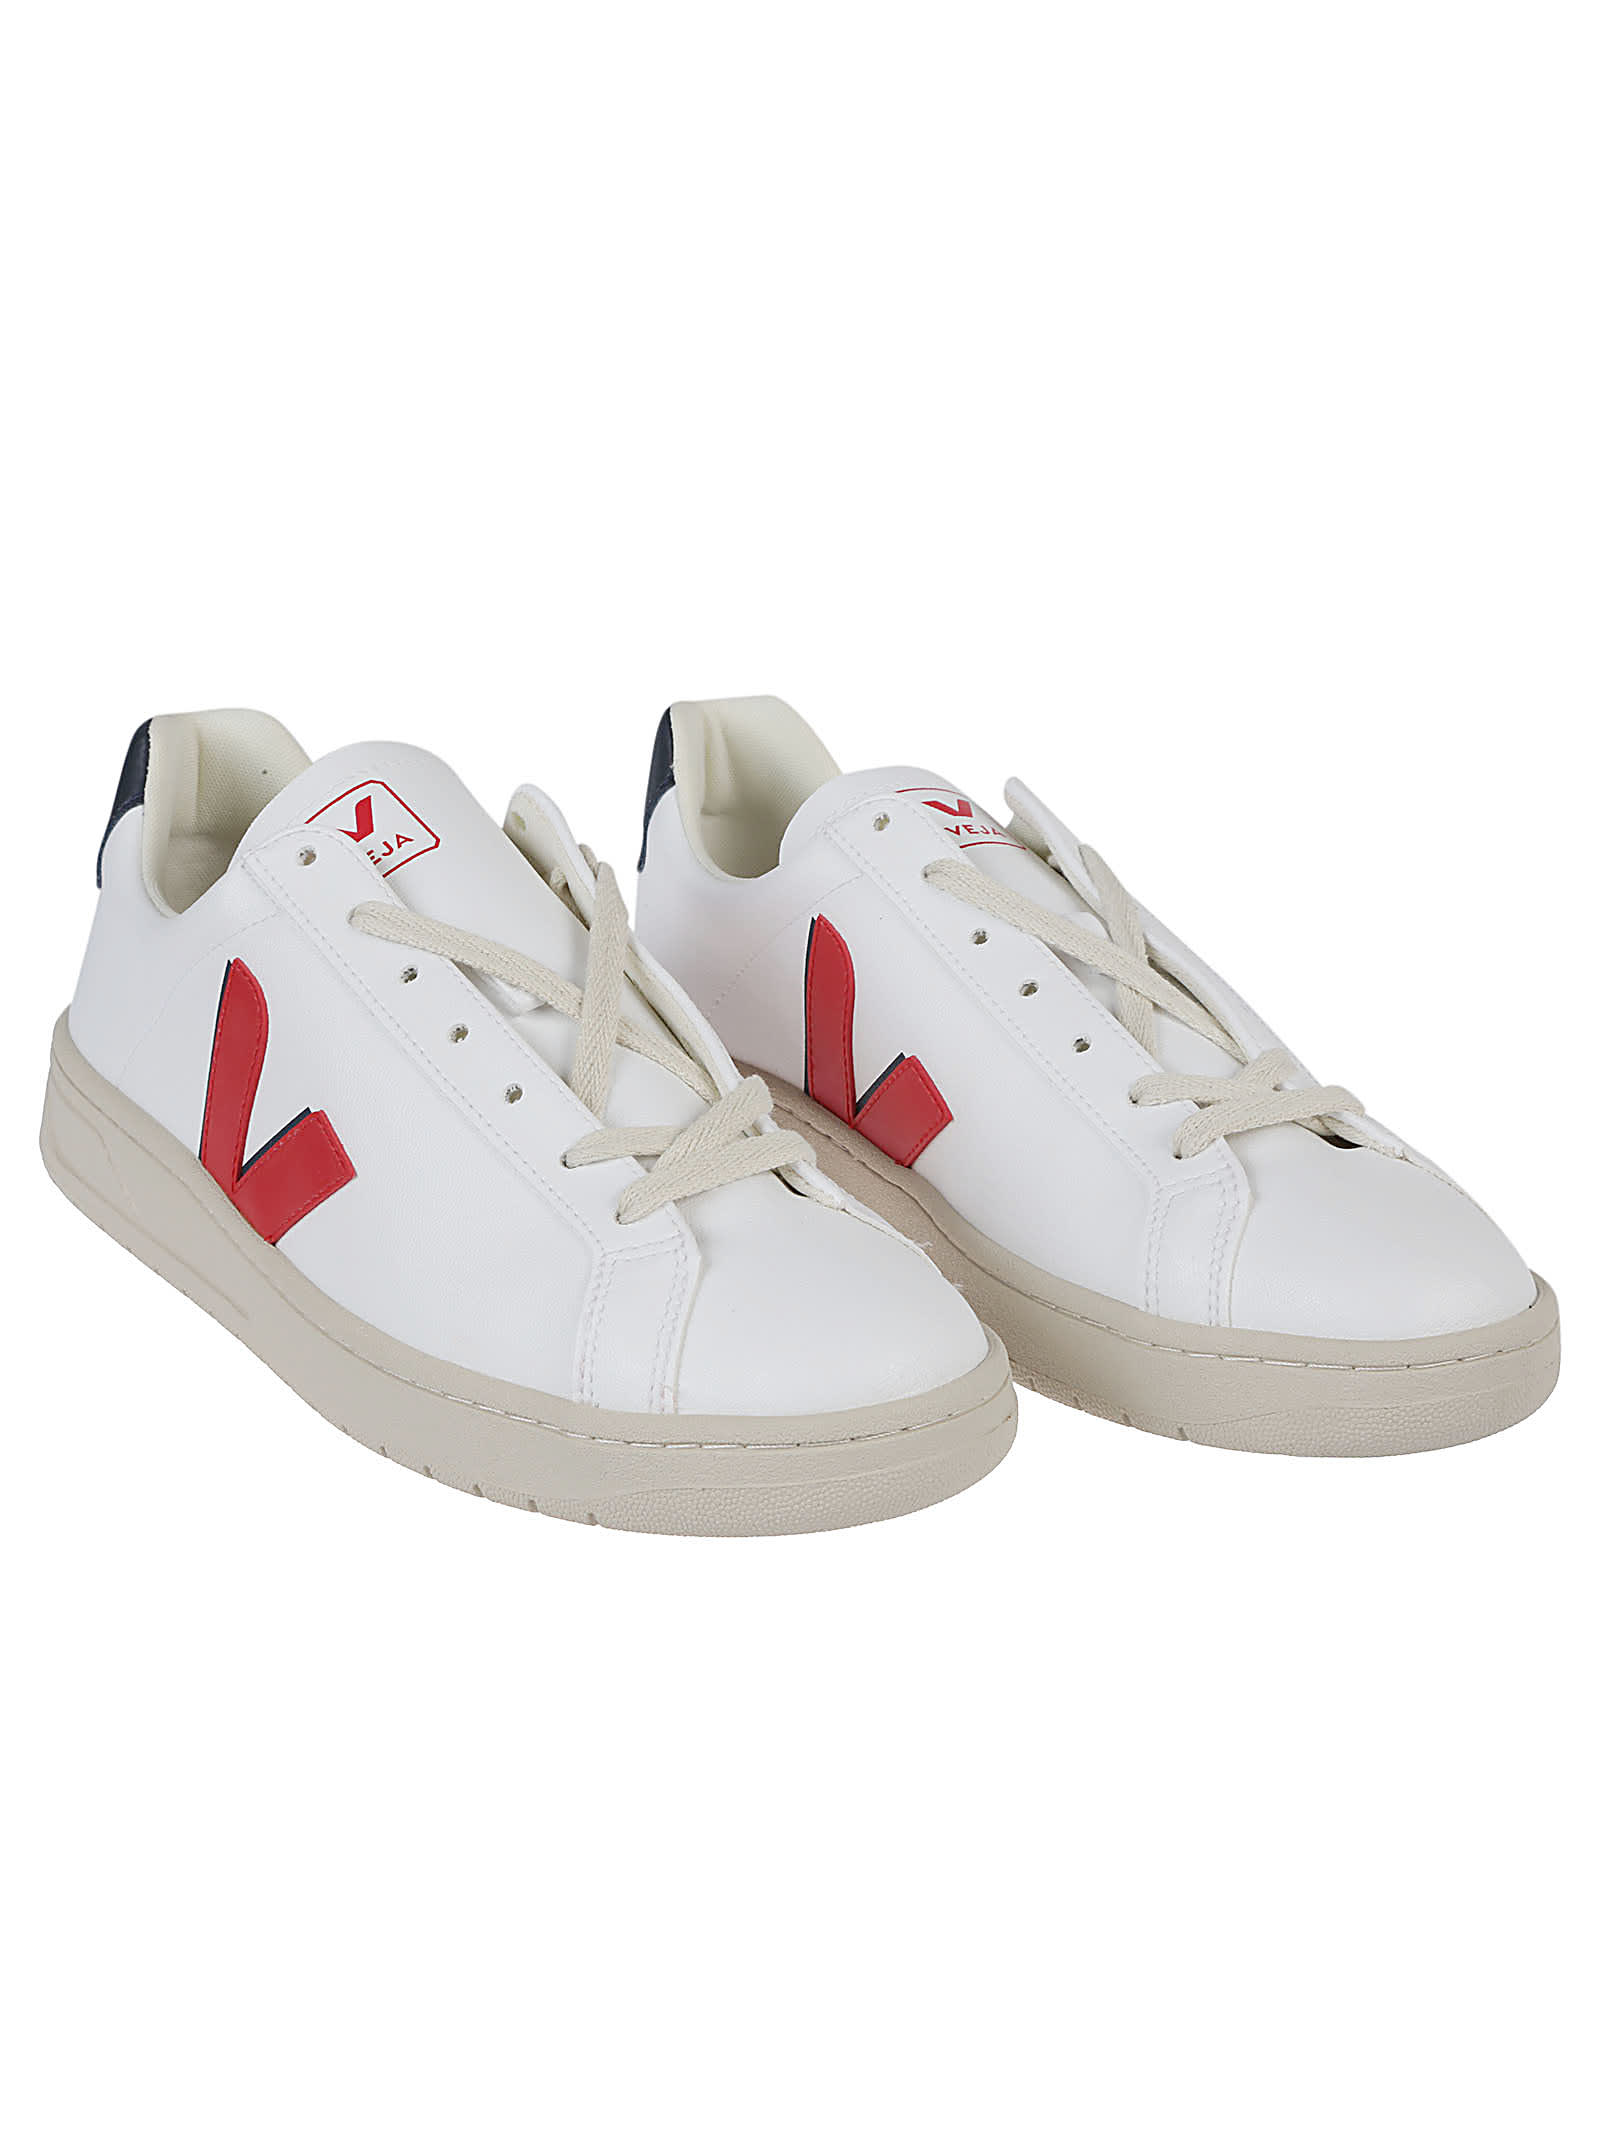 Shop Veja Urca Sneakers In White/pekin/nautico